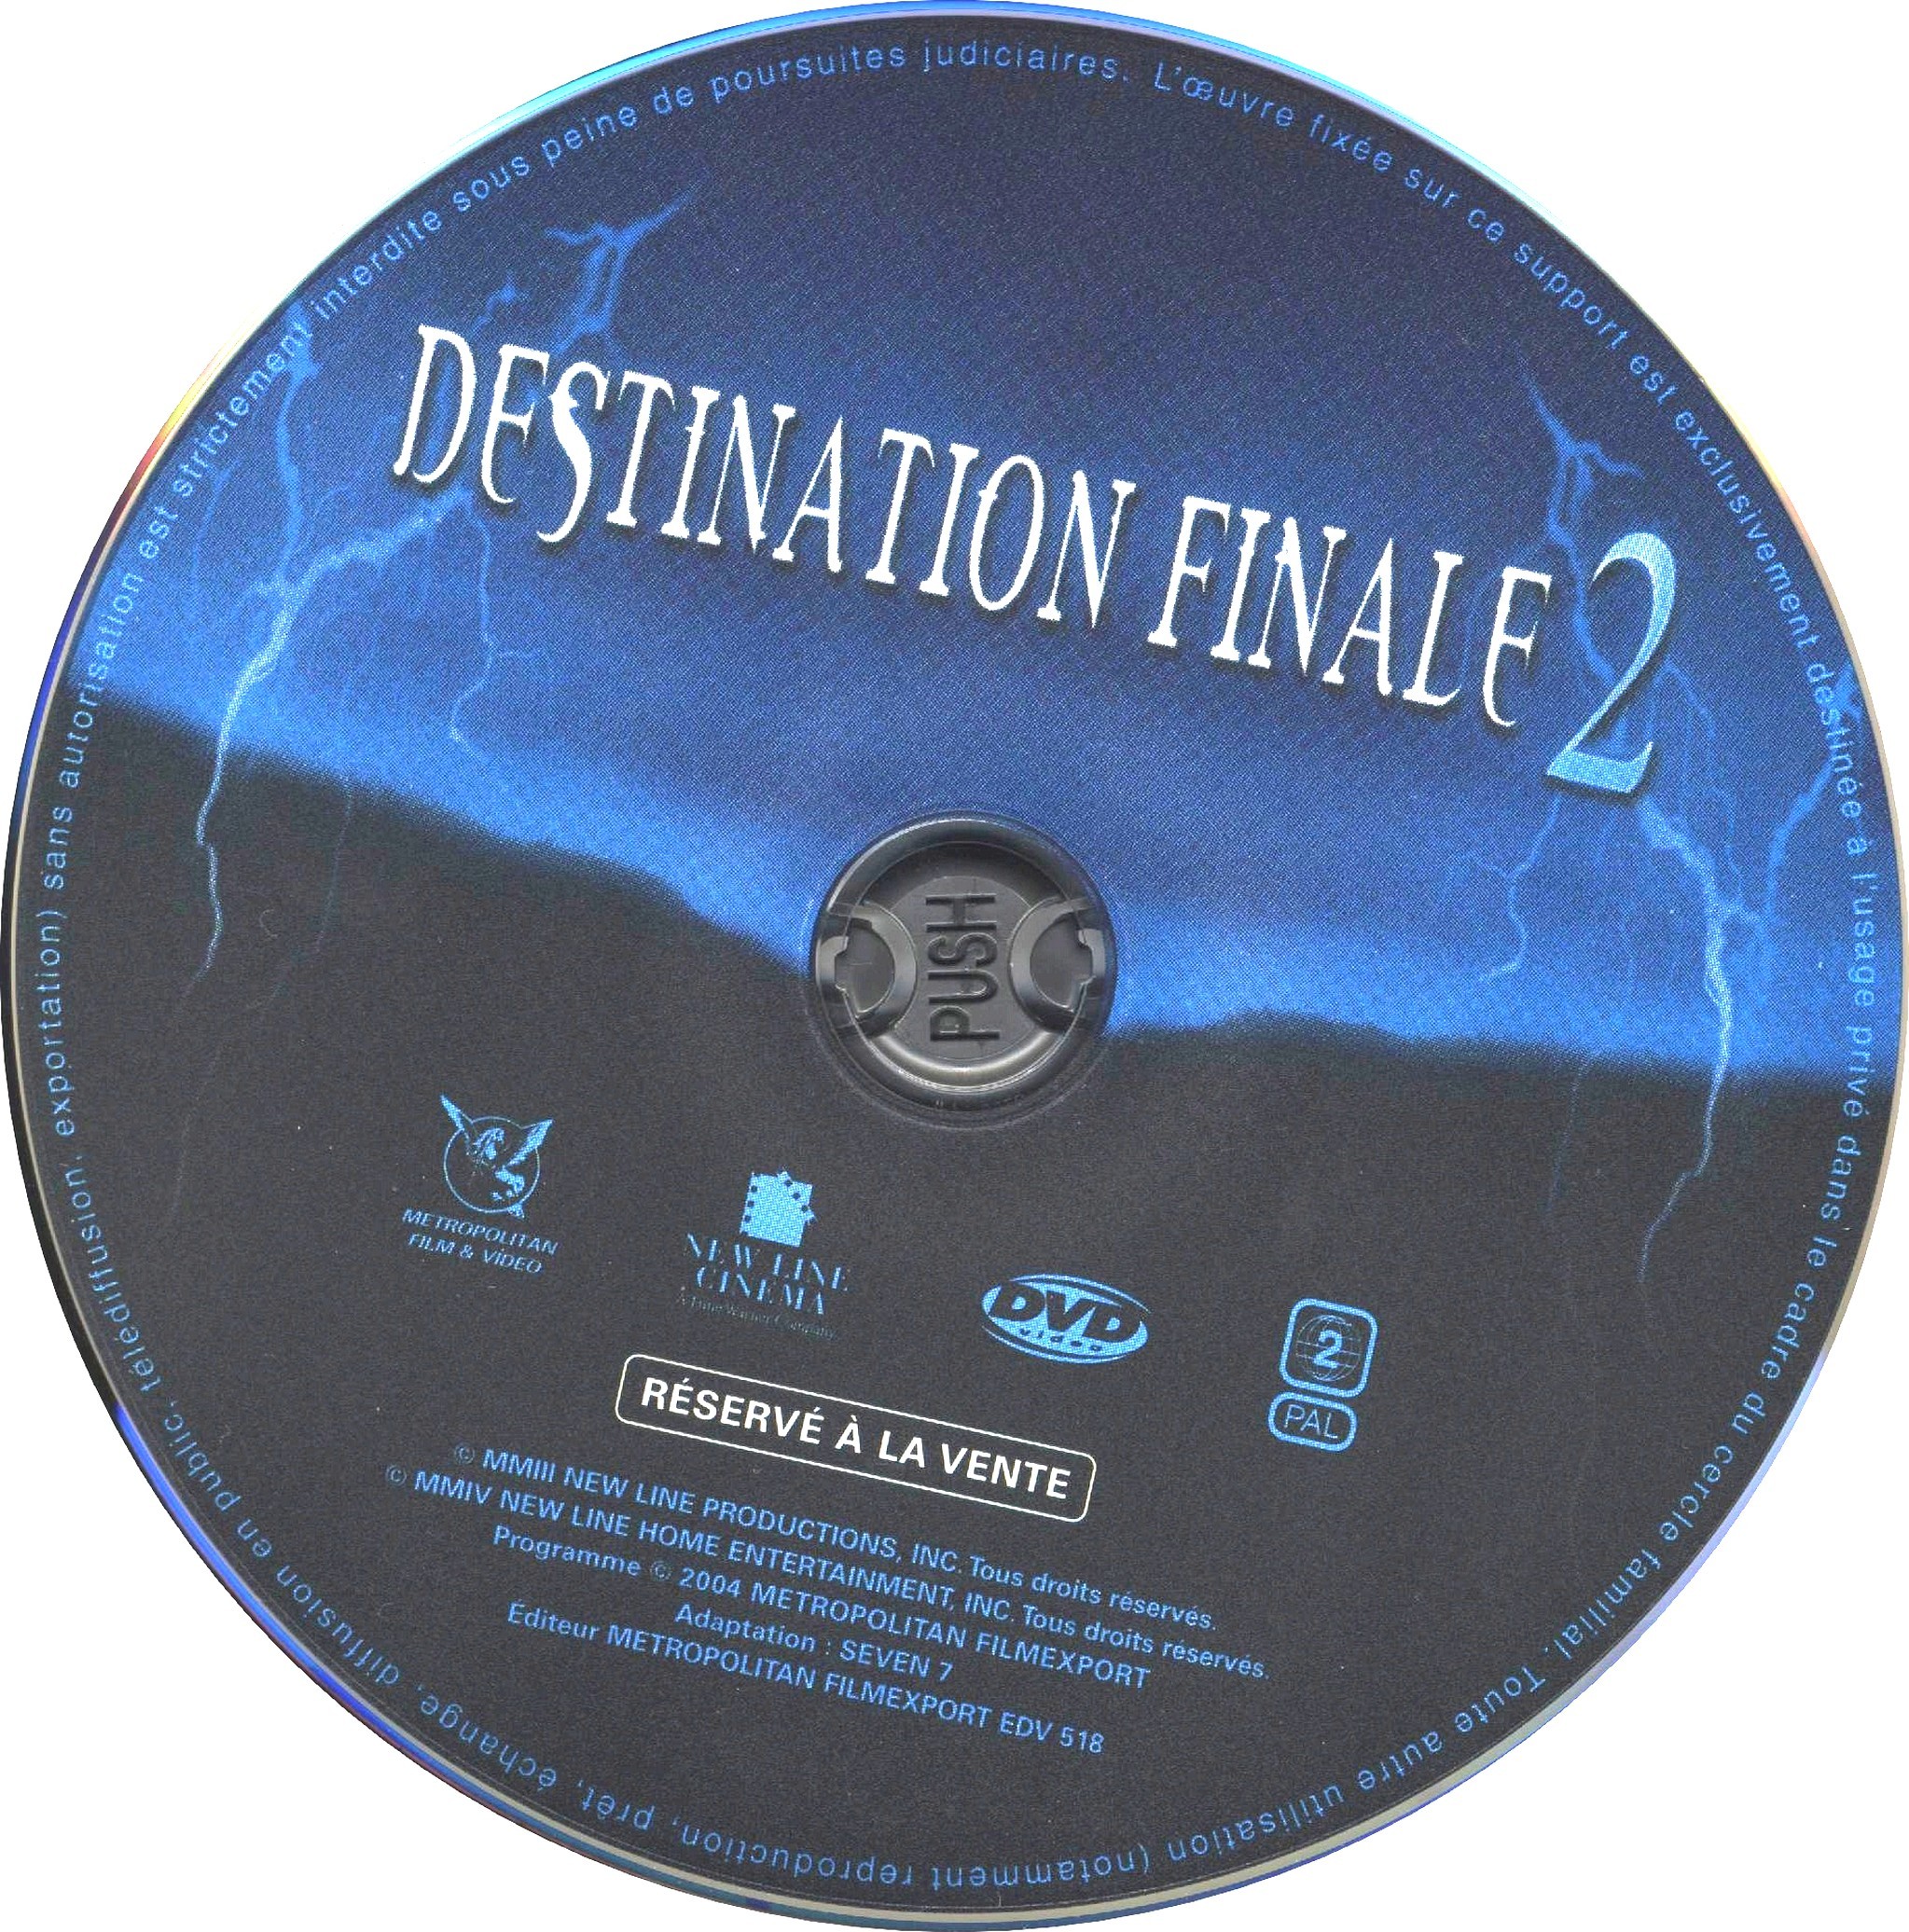 Destination finale 2